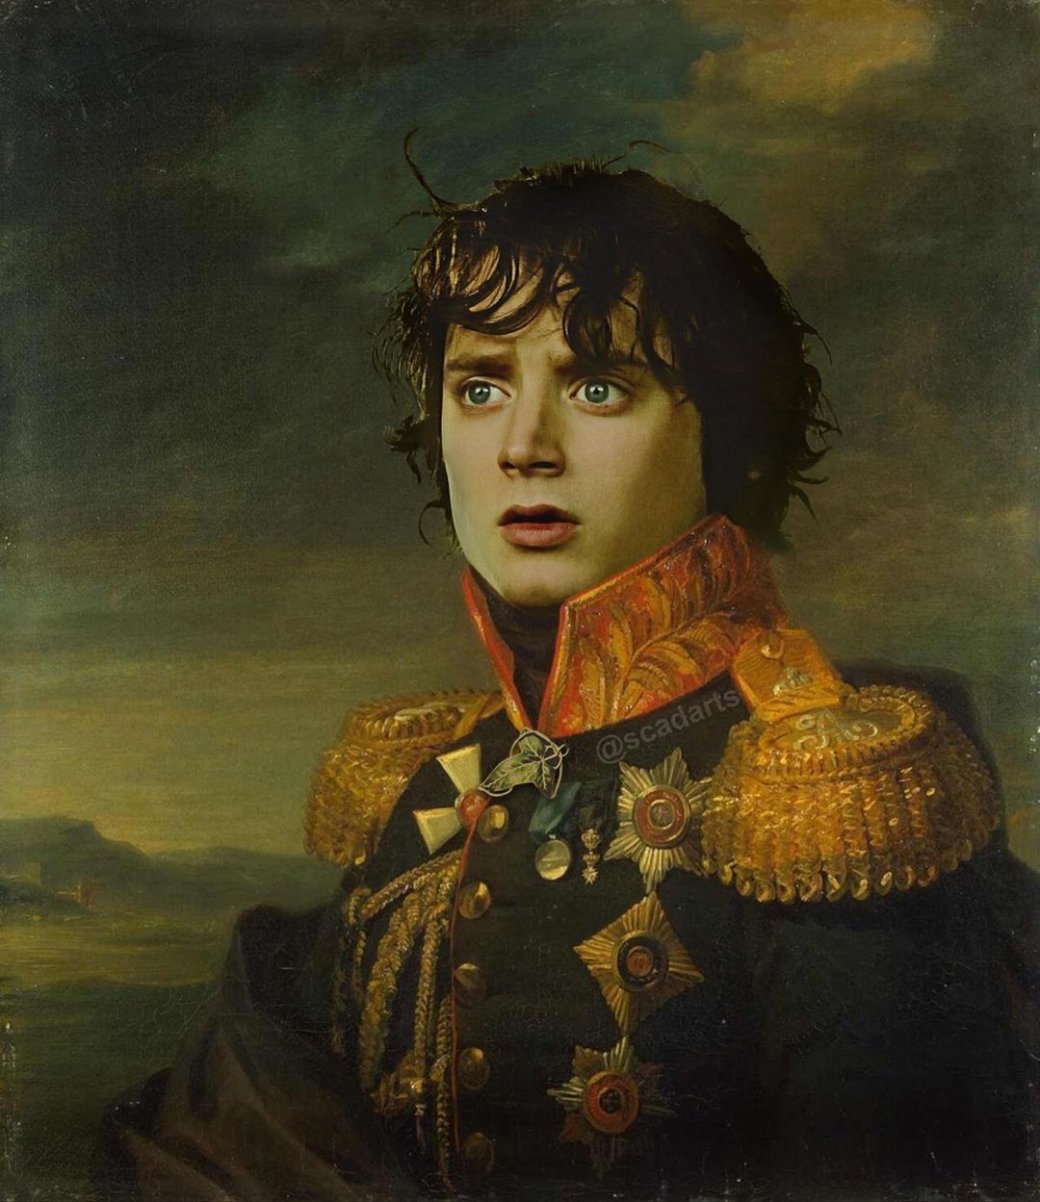 Галерея Фродо в мундире: энтузиаст делает парадные портреты героев известных франшиз - 8 фото